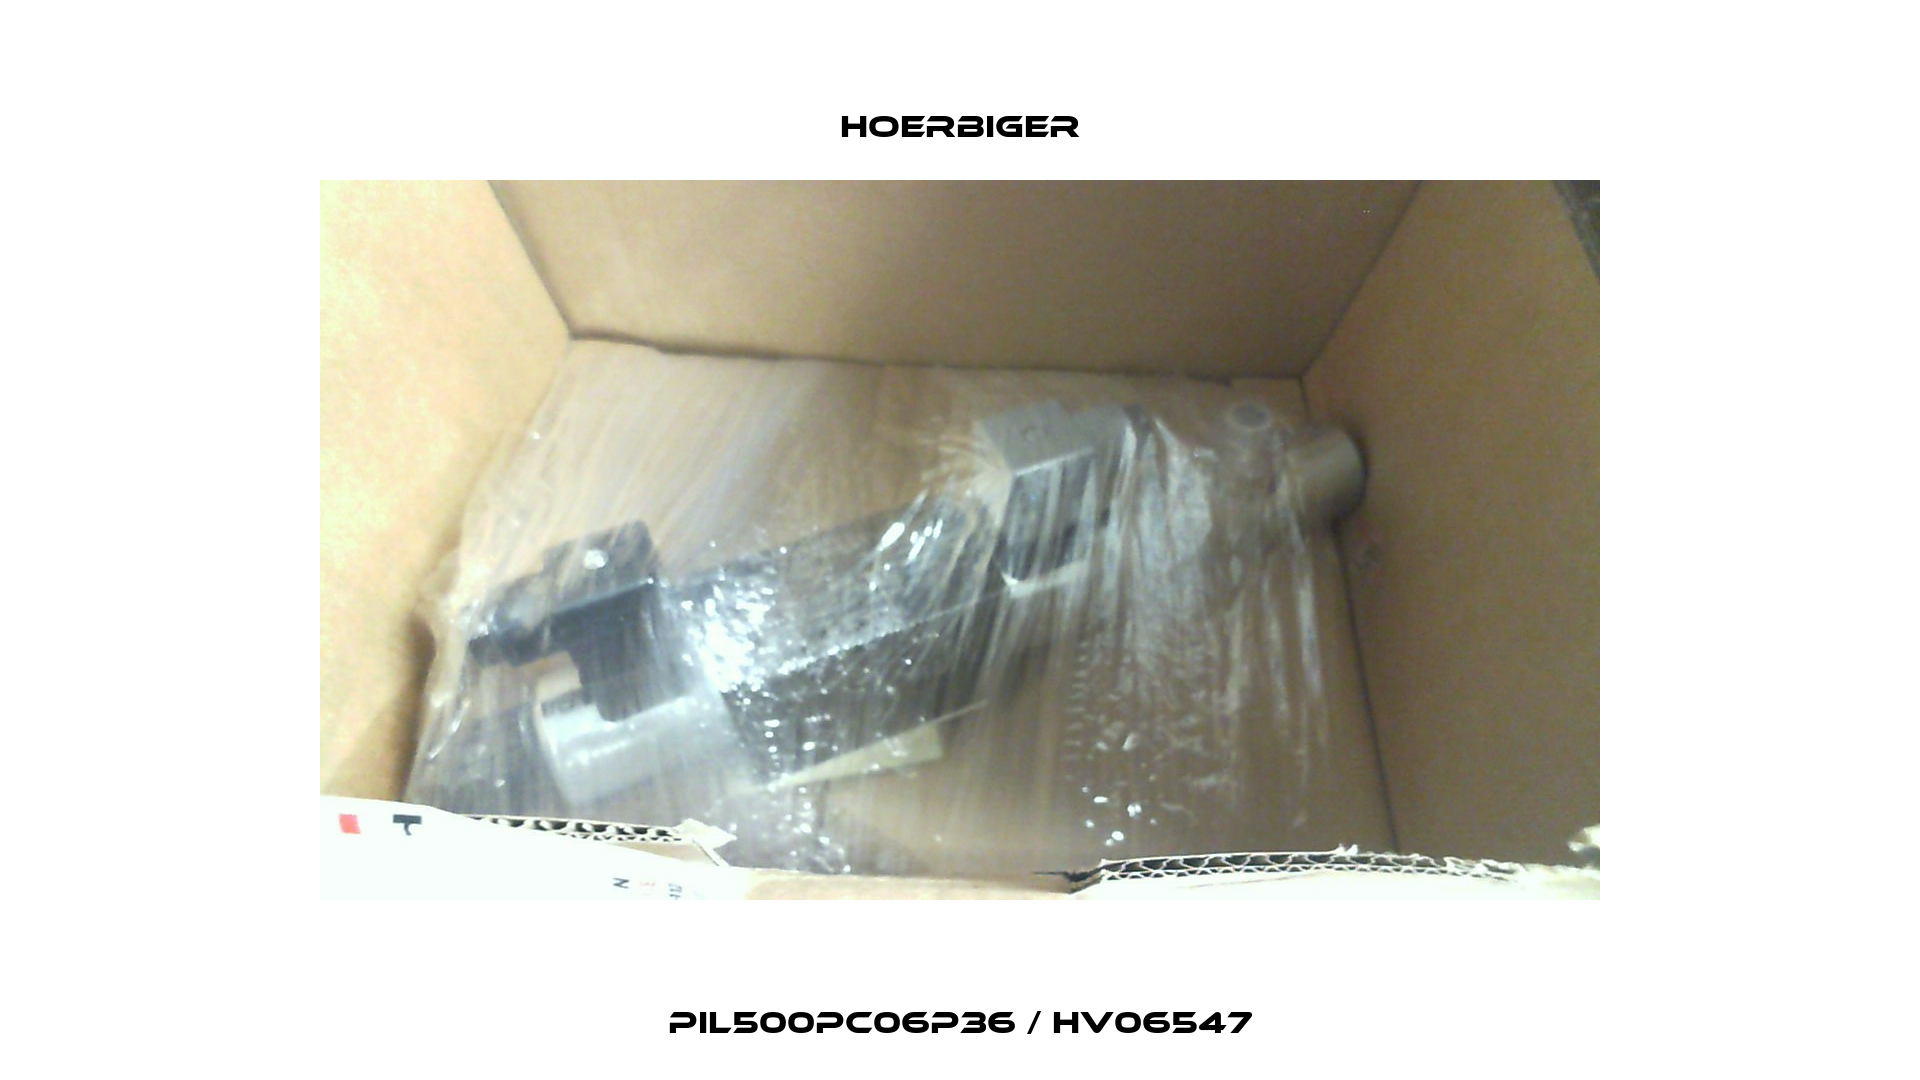 PIL500PC06P36 / HV06547 Hoerbiger